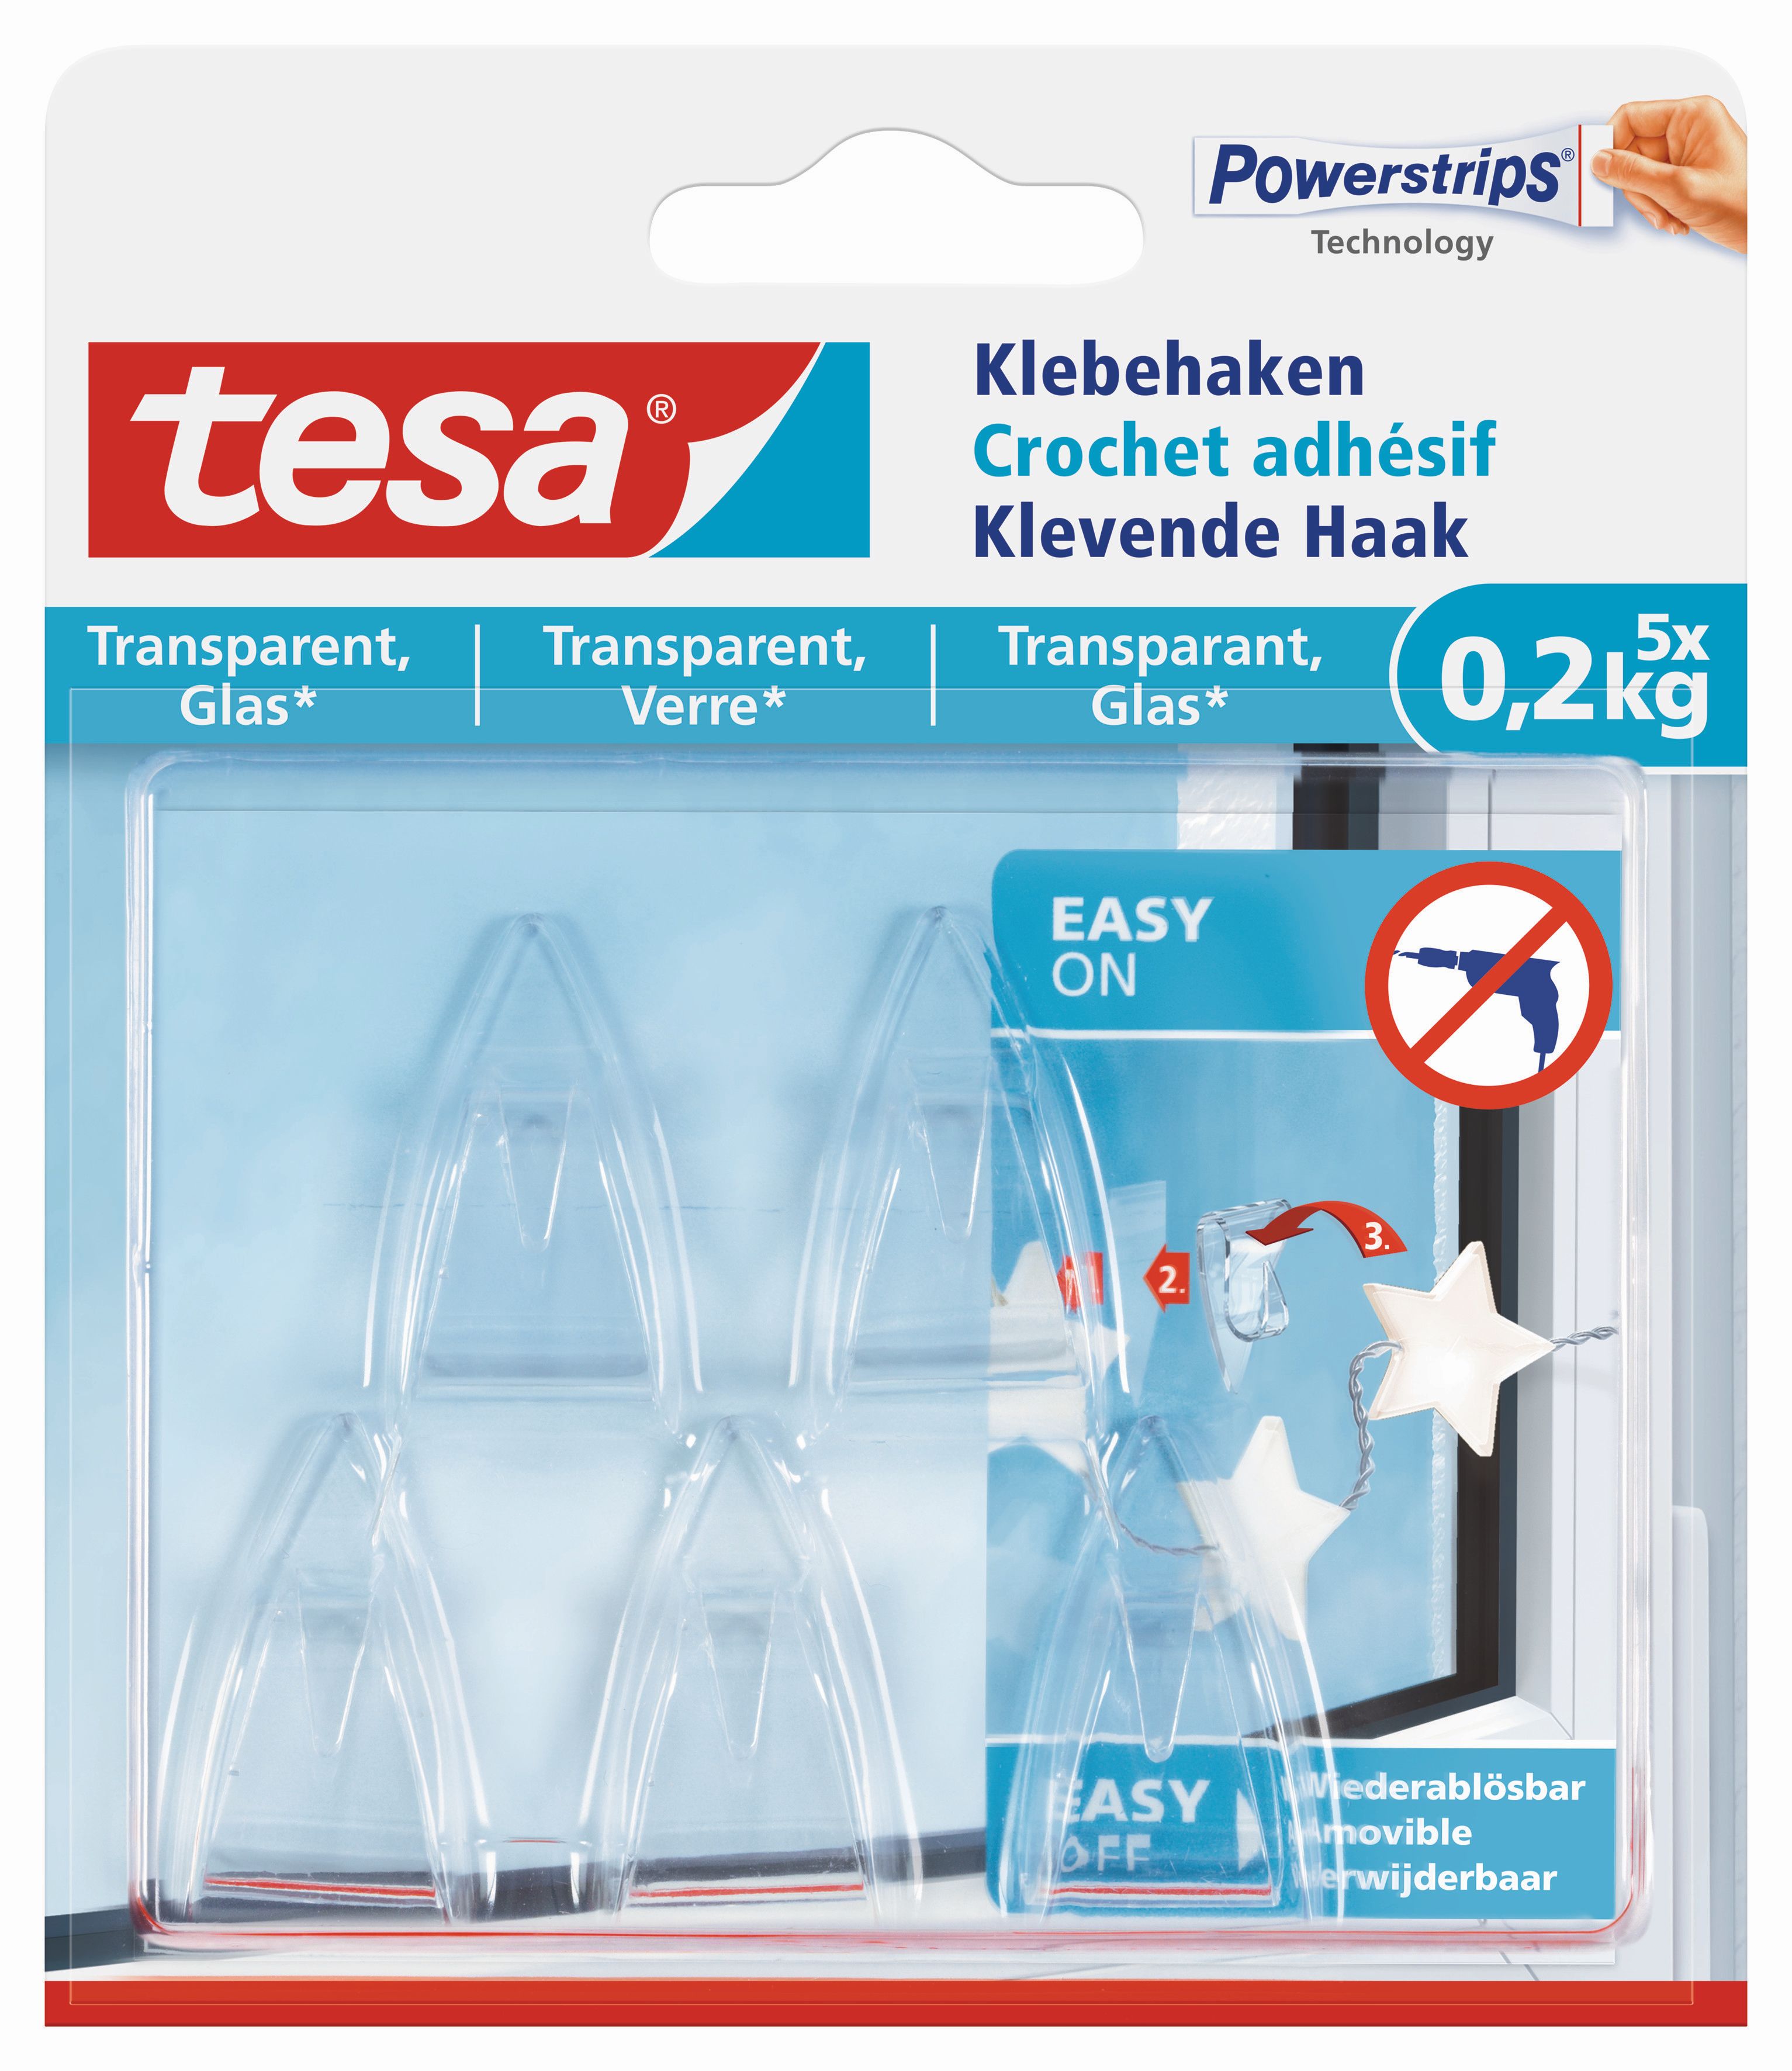 Klebehaken für transparente Oberflächen und Glas (1 kg)